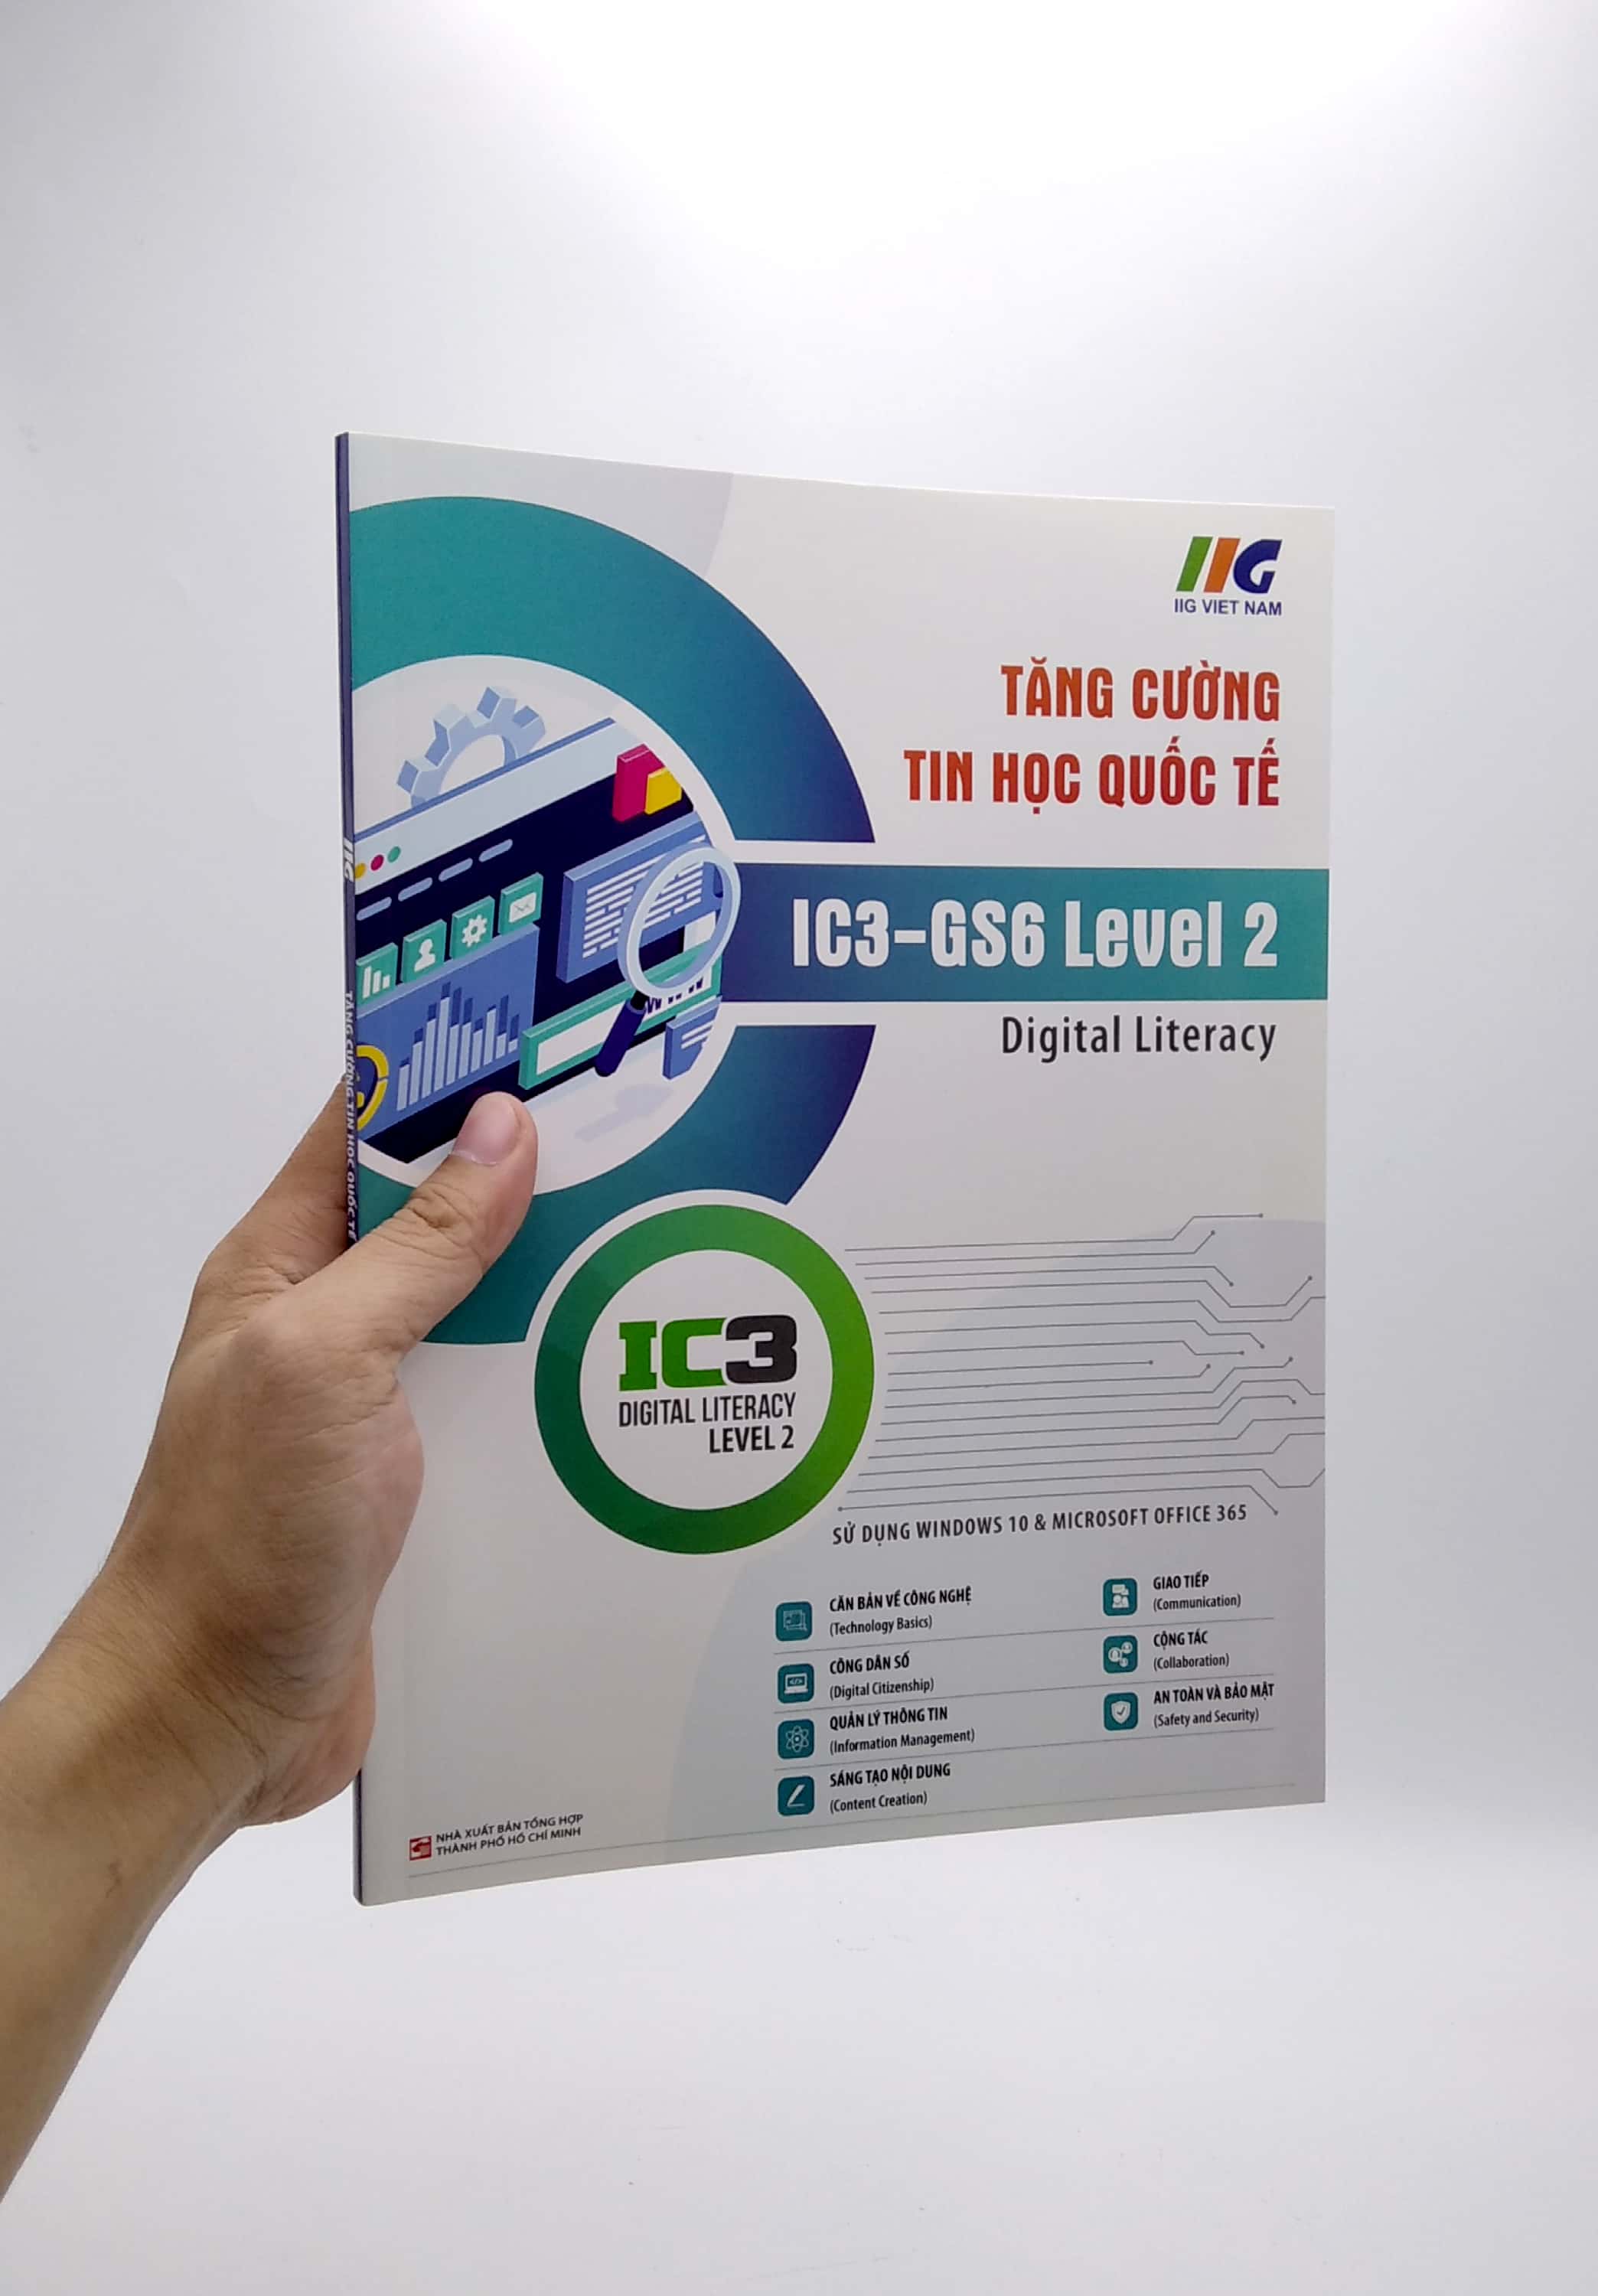 Tăng Cường Tin Học Quốc Tế - IC3 - GS6 Level 2 PDF